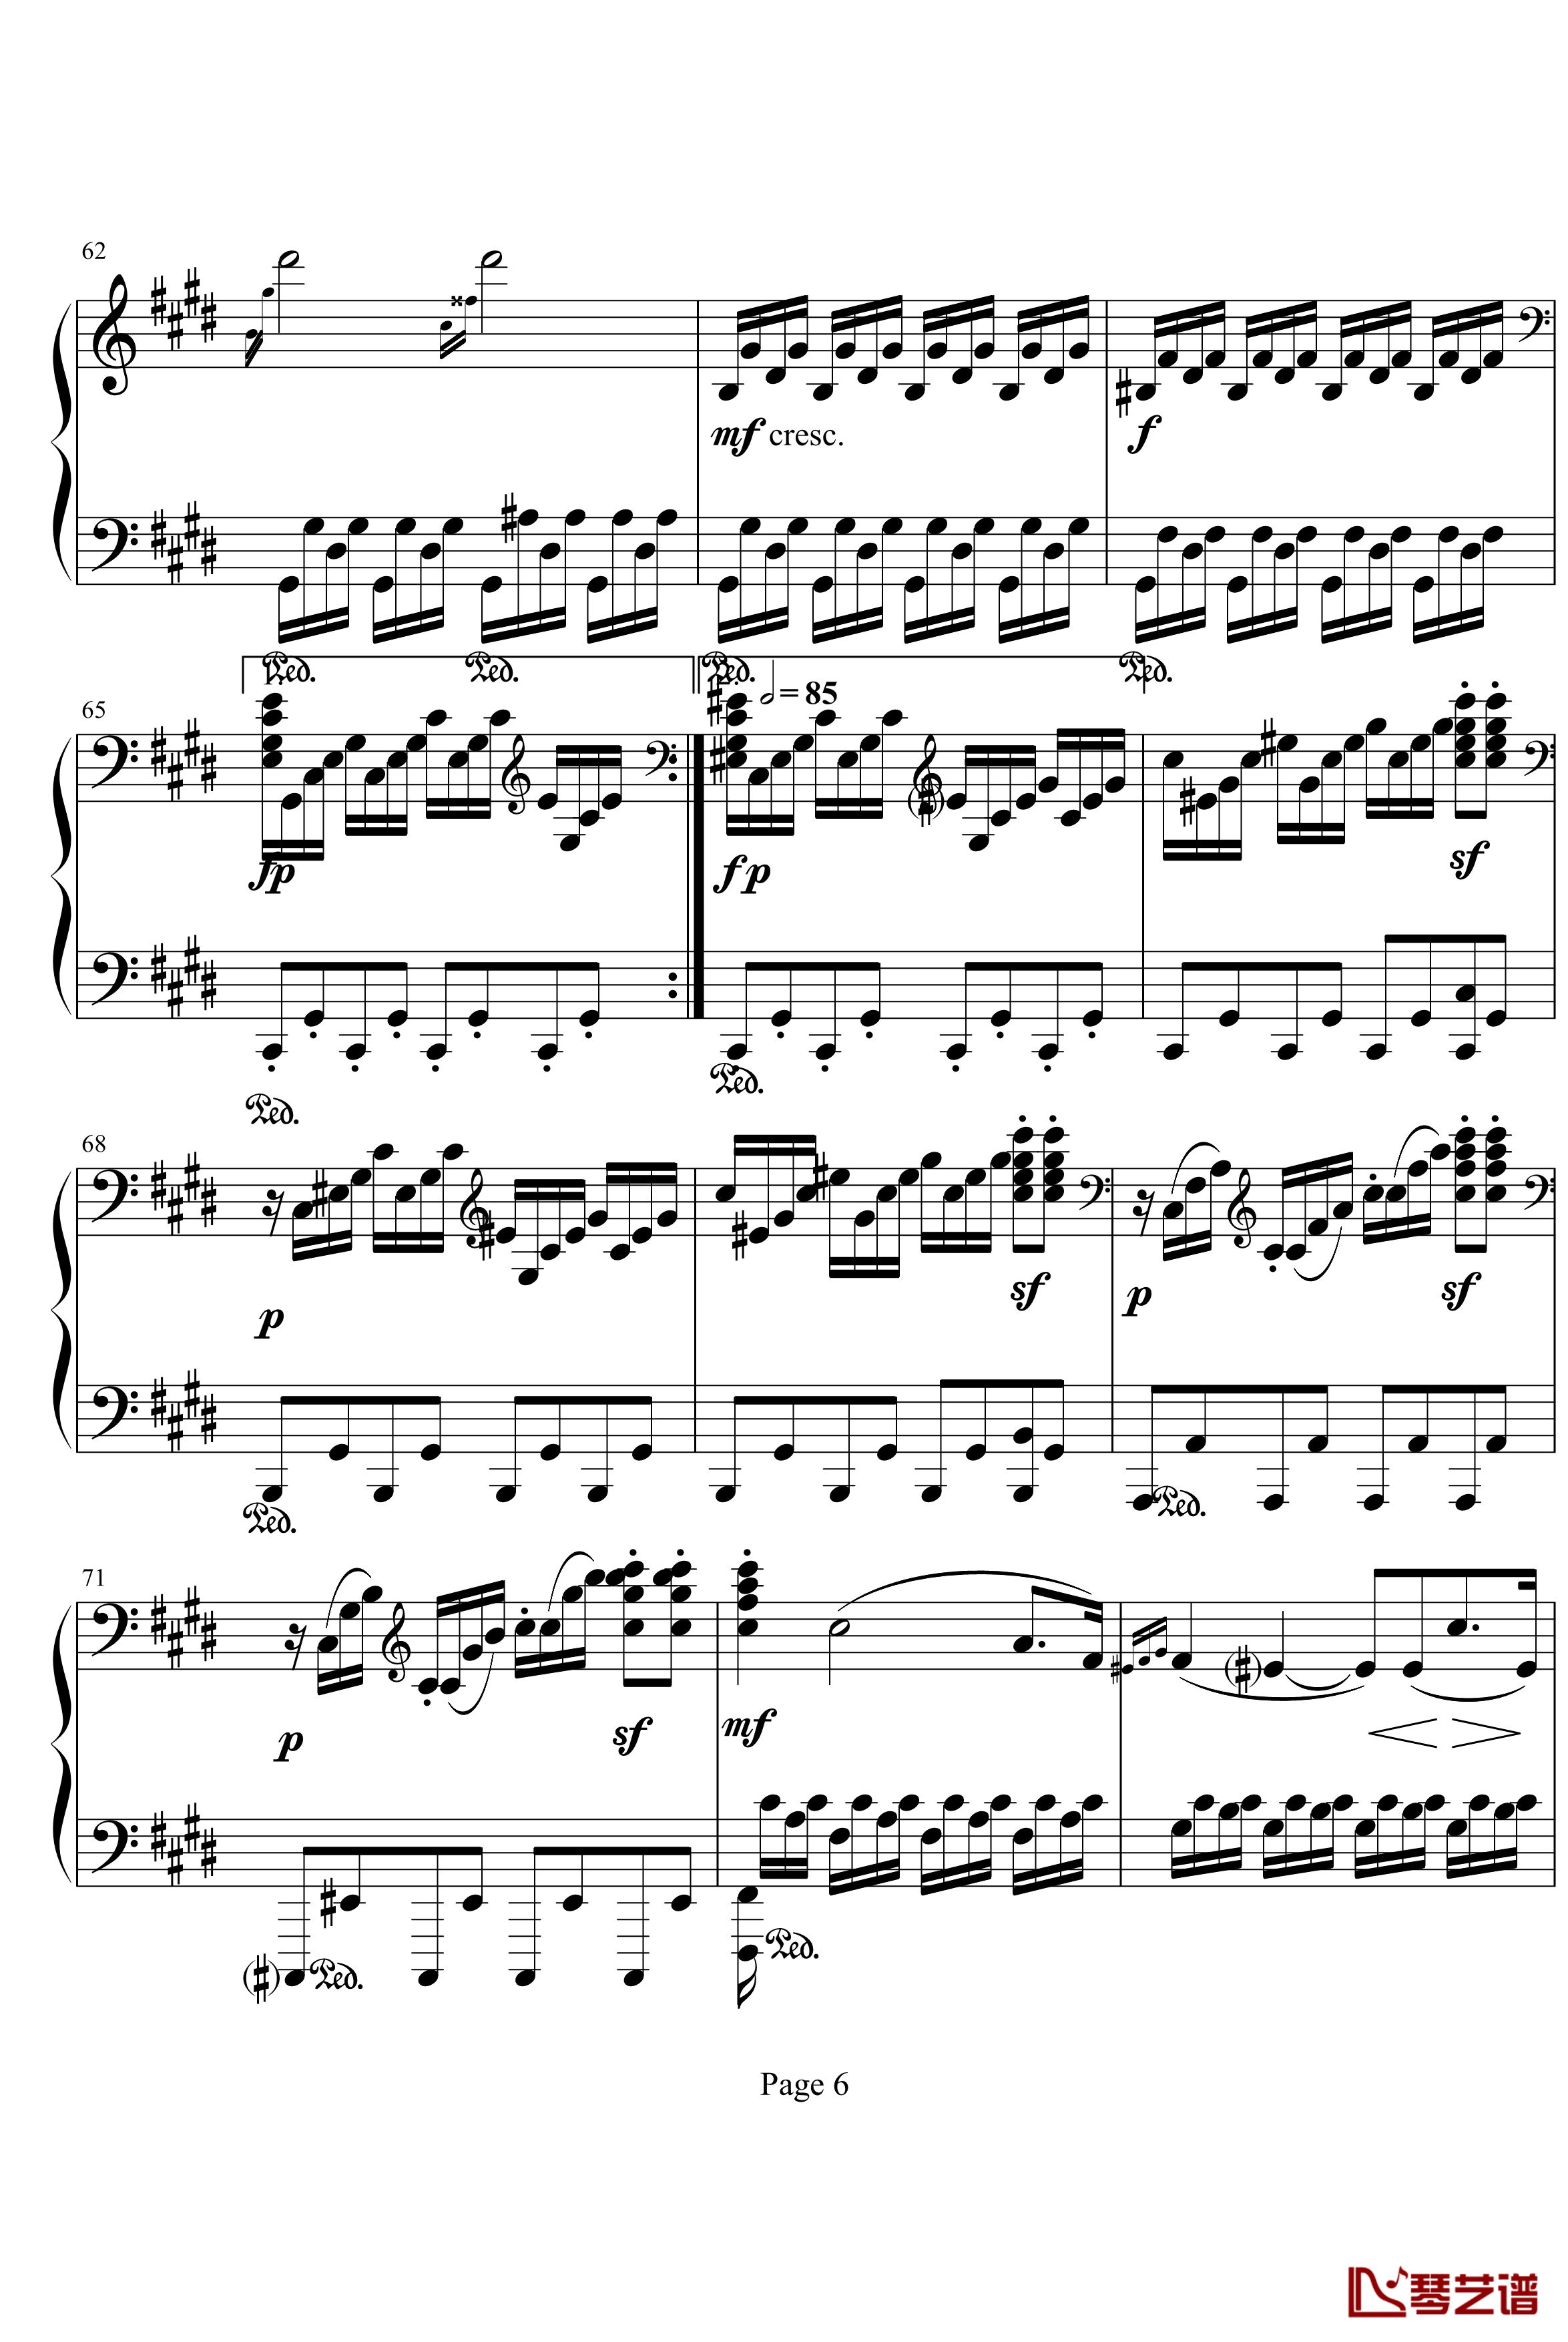 月光奏明曲钢琴谱-作品27之2-贝多芬-beethoven